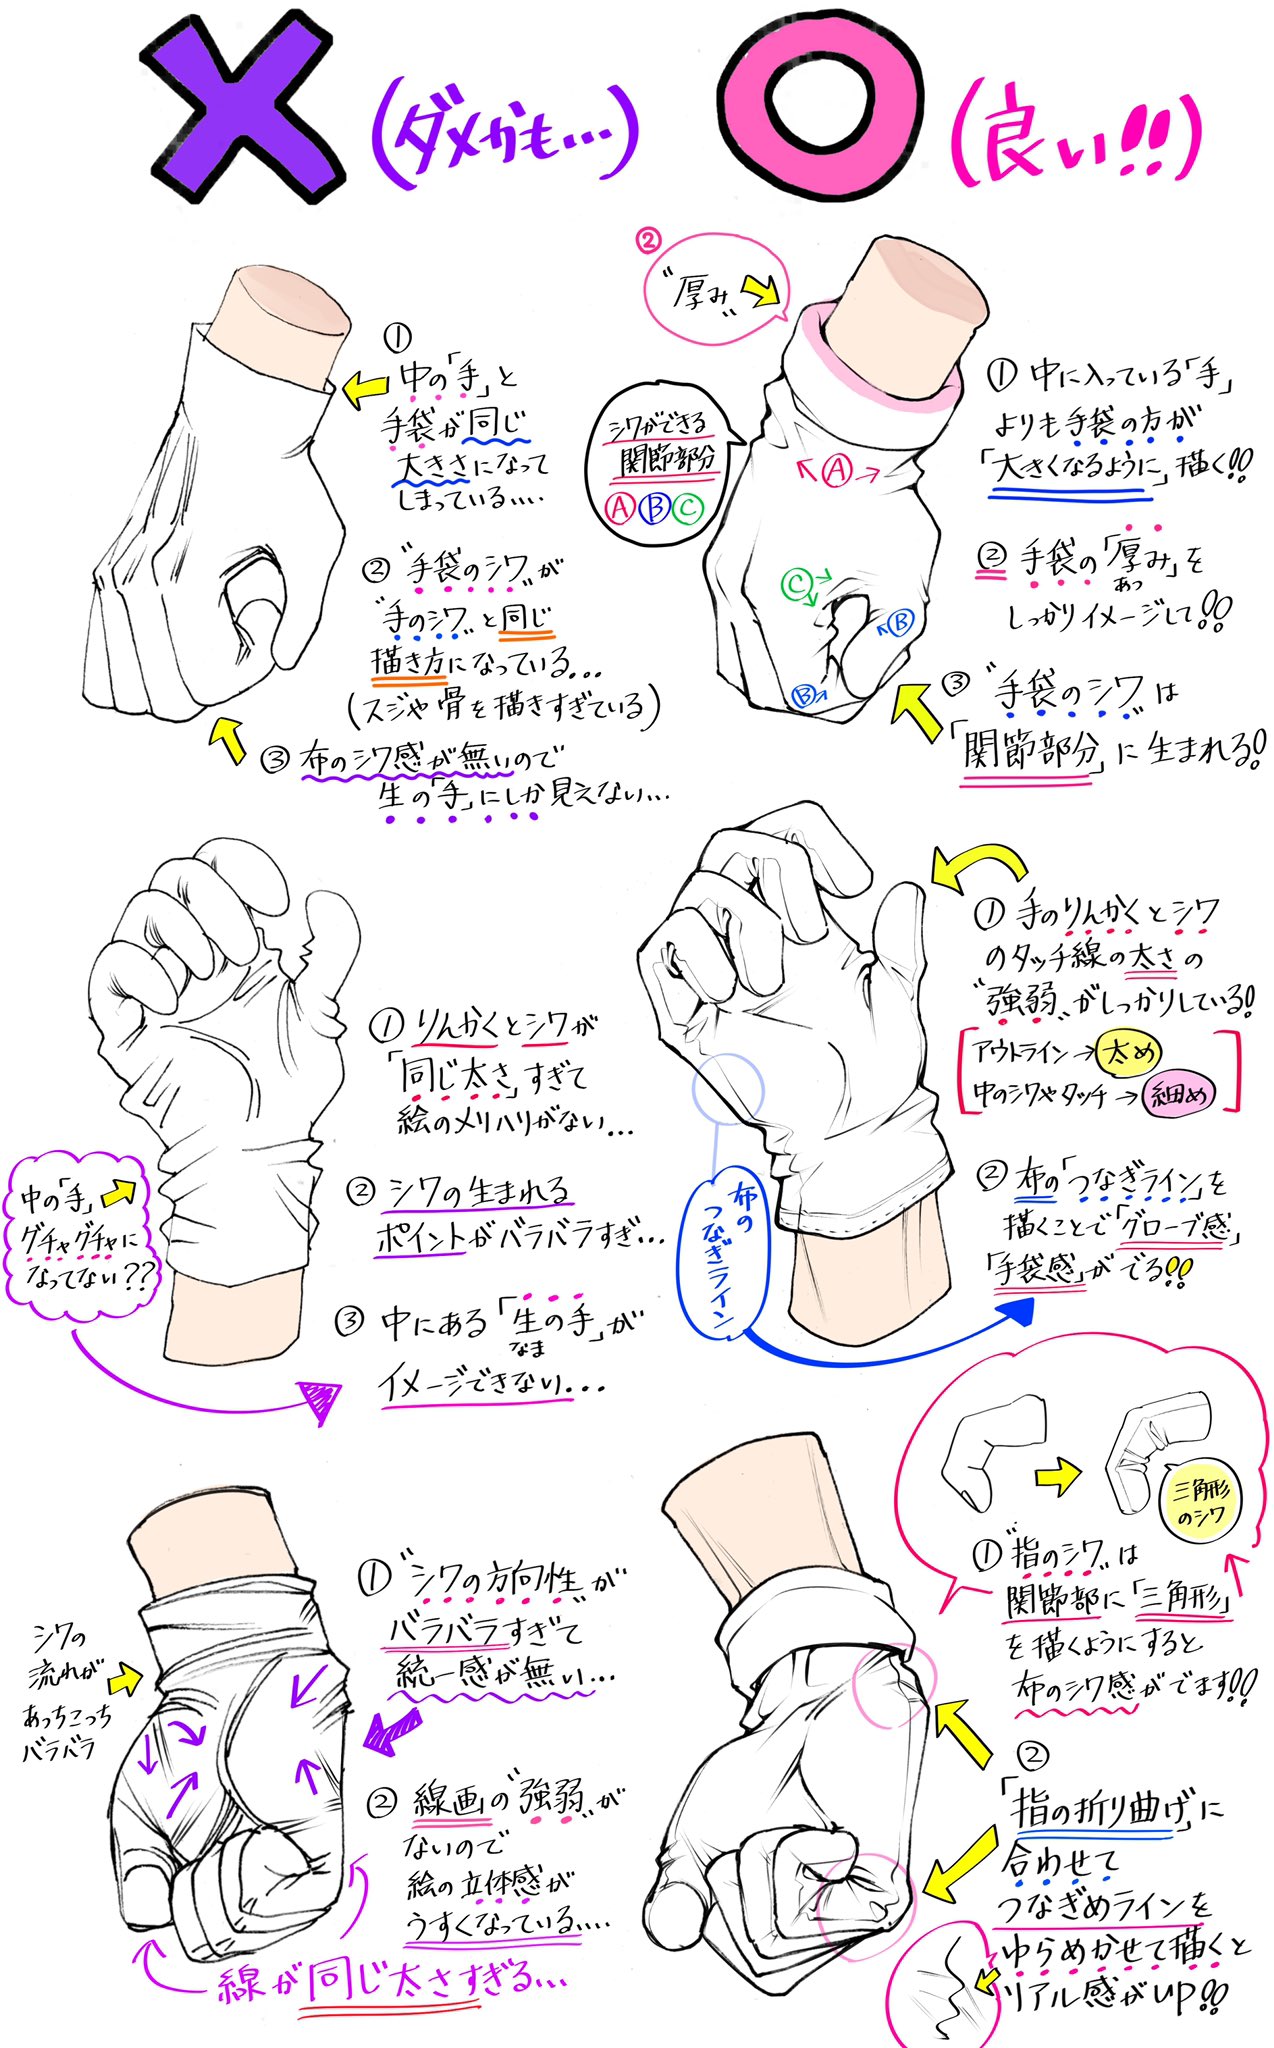 吉村拓也 イラスト講座 手袋グローブの描き方 手袋 の質感やシワ が上達する ダメかも と 良いかも